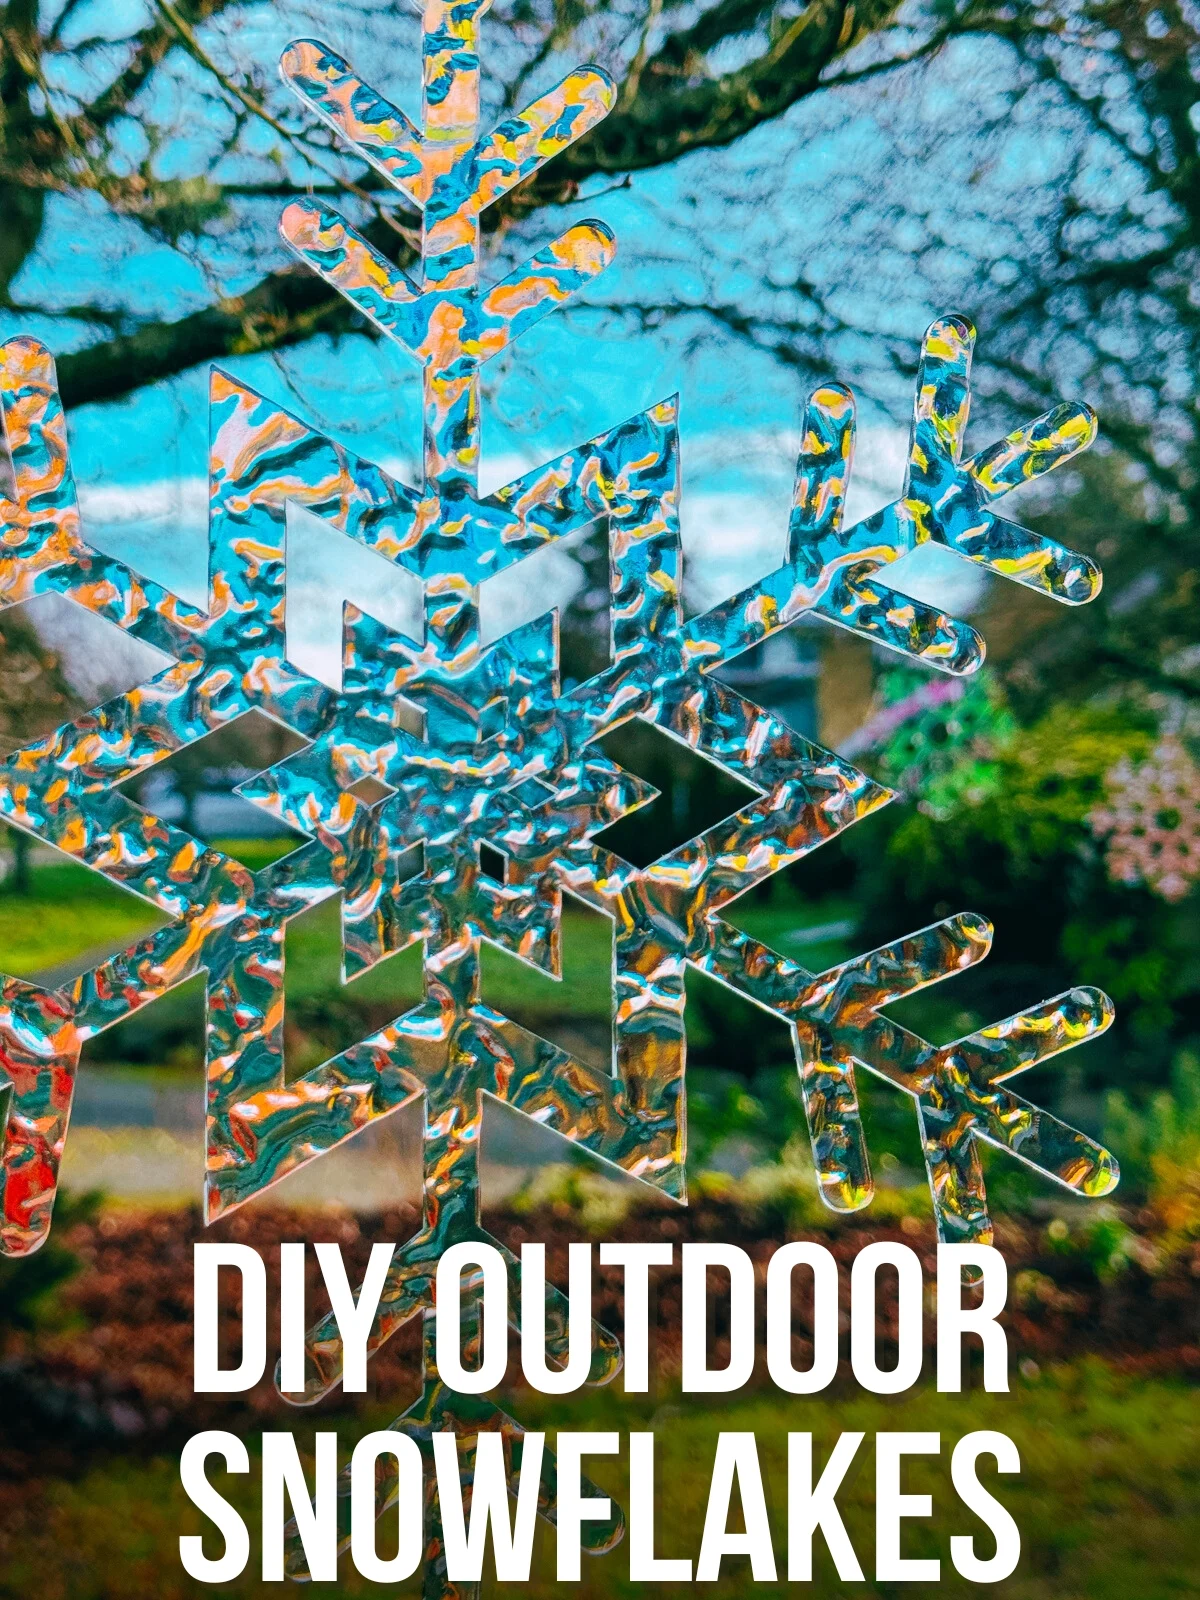 DIY outdoor snowflakes